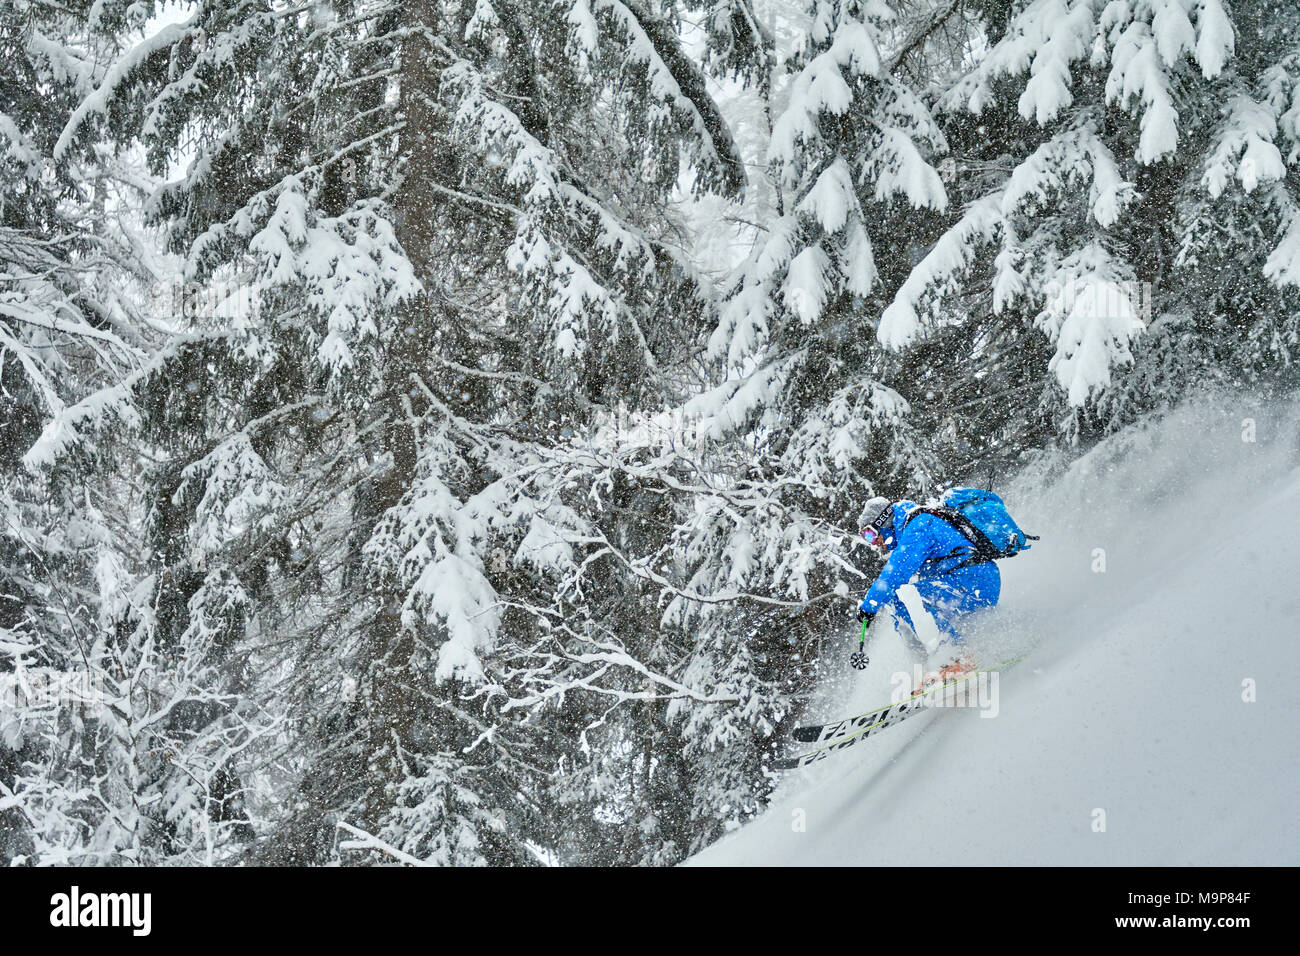 Esquiador esquí empinada cuesta abajo, Pavillon, Courmayeur, Aosta, Italia Foto de stock